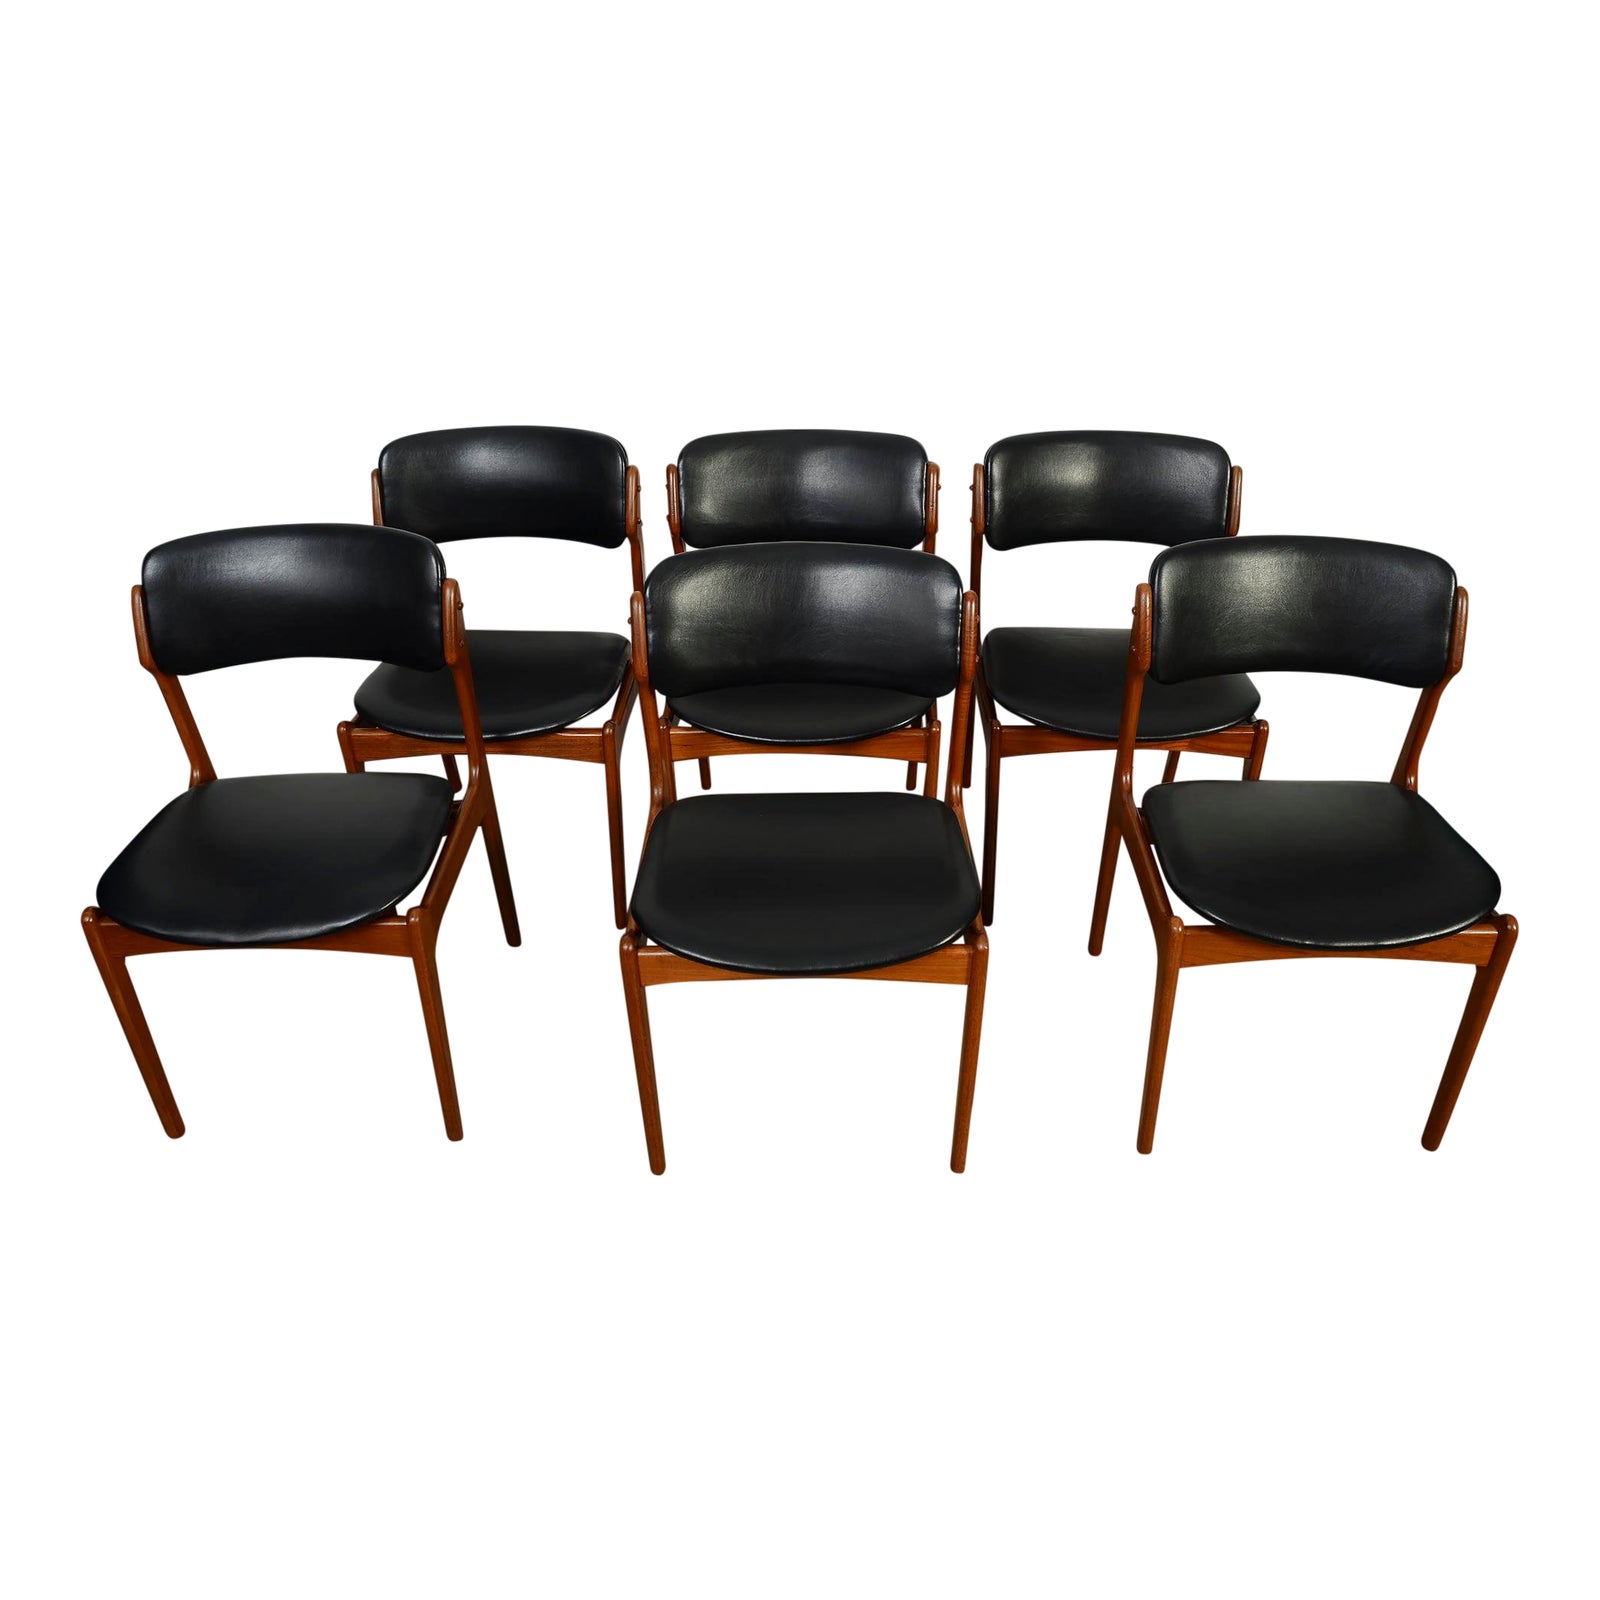 1960s vintage erik buch danish modern od mobler model 49 black leather teak dining chairs set of 6 7615